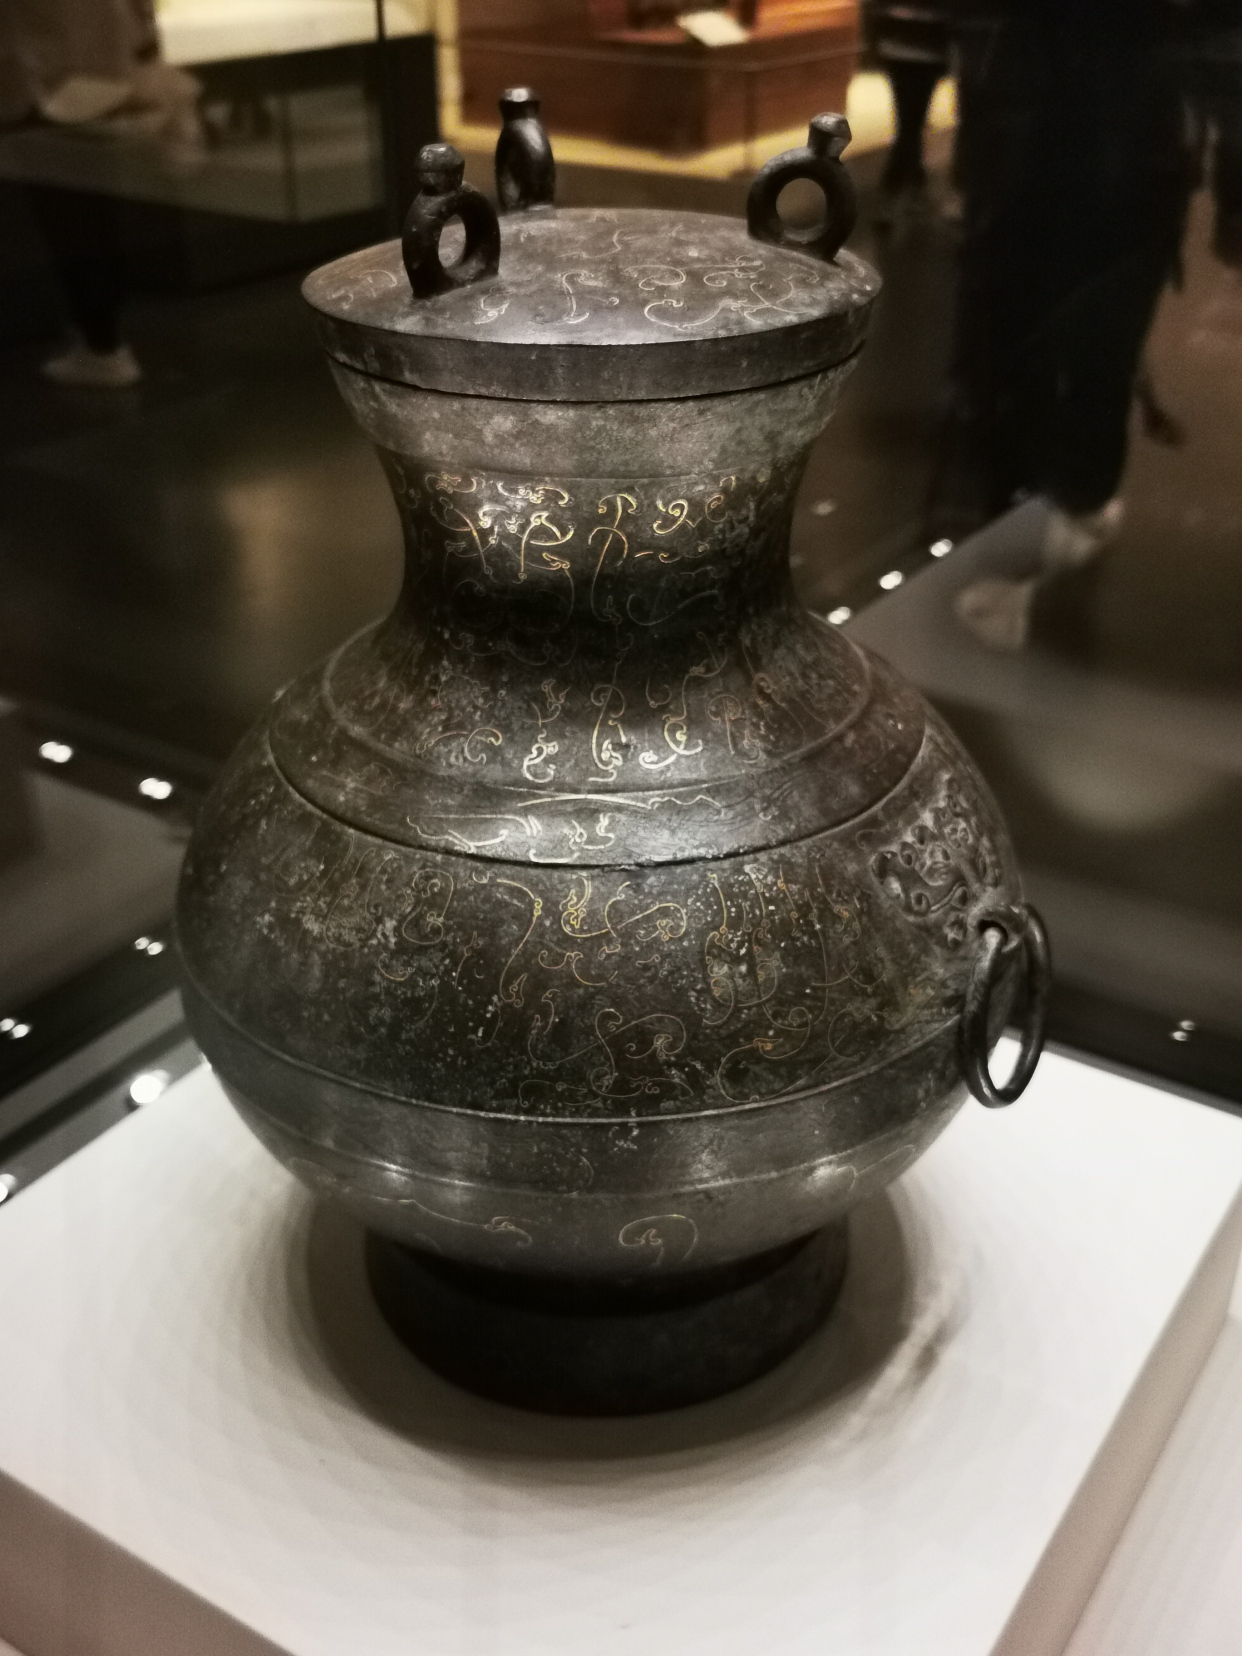 错金银鸟篆文青铜壶:汉代铜器的巅峰之作